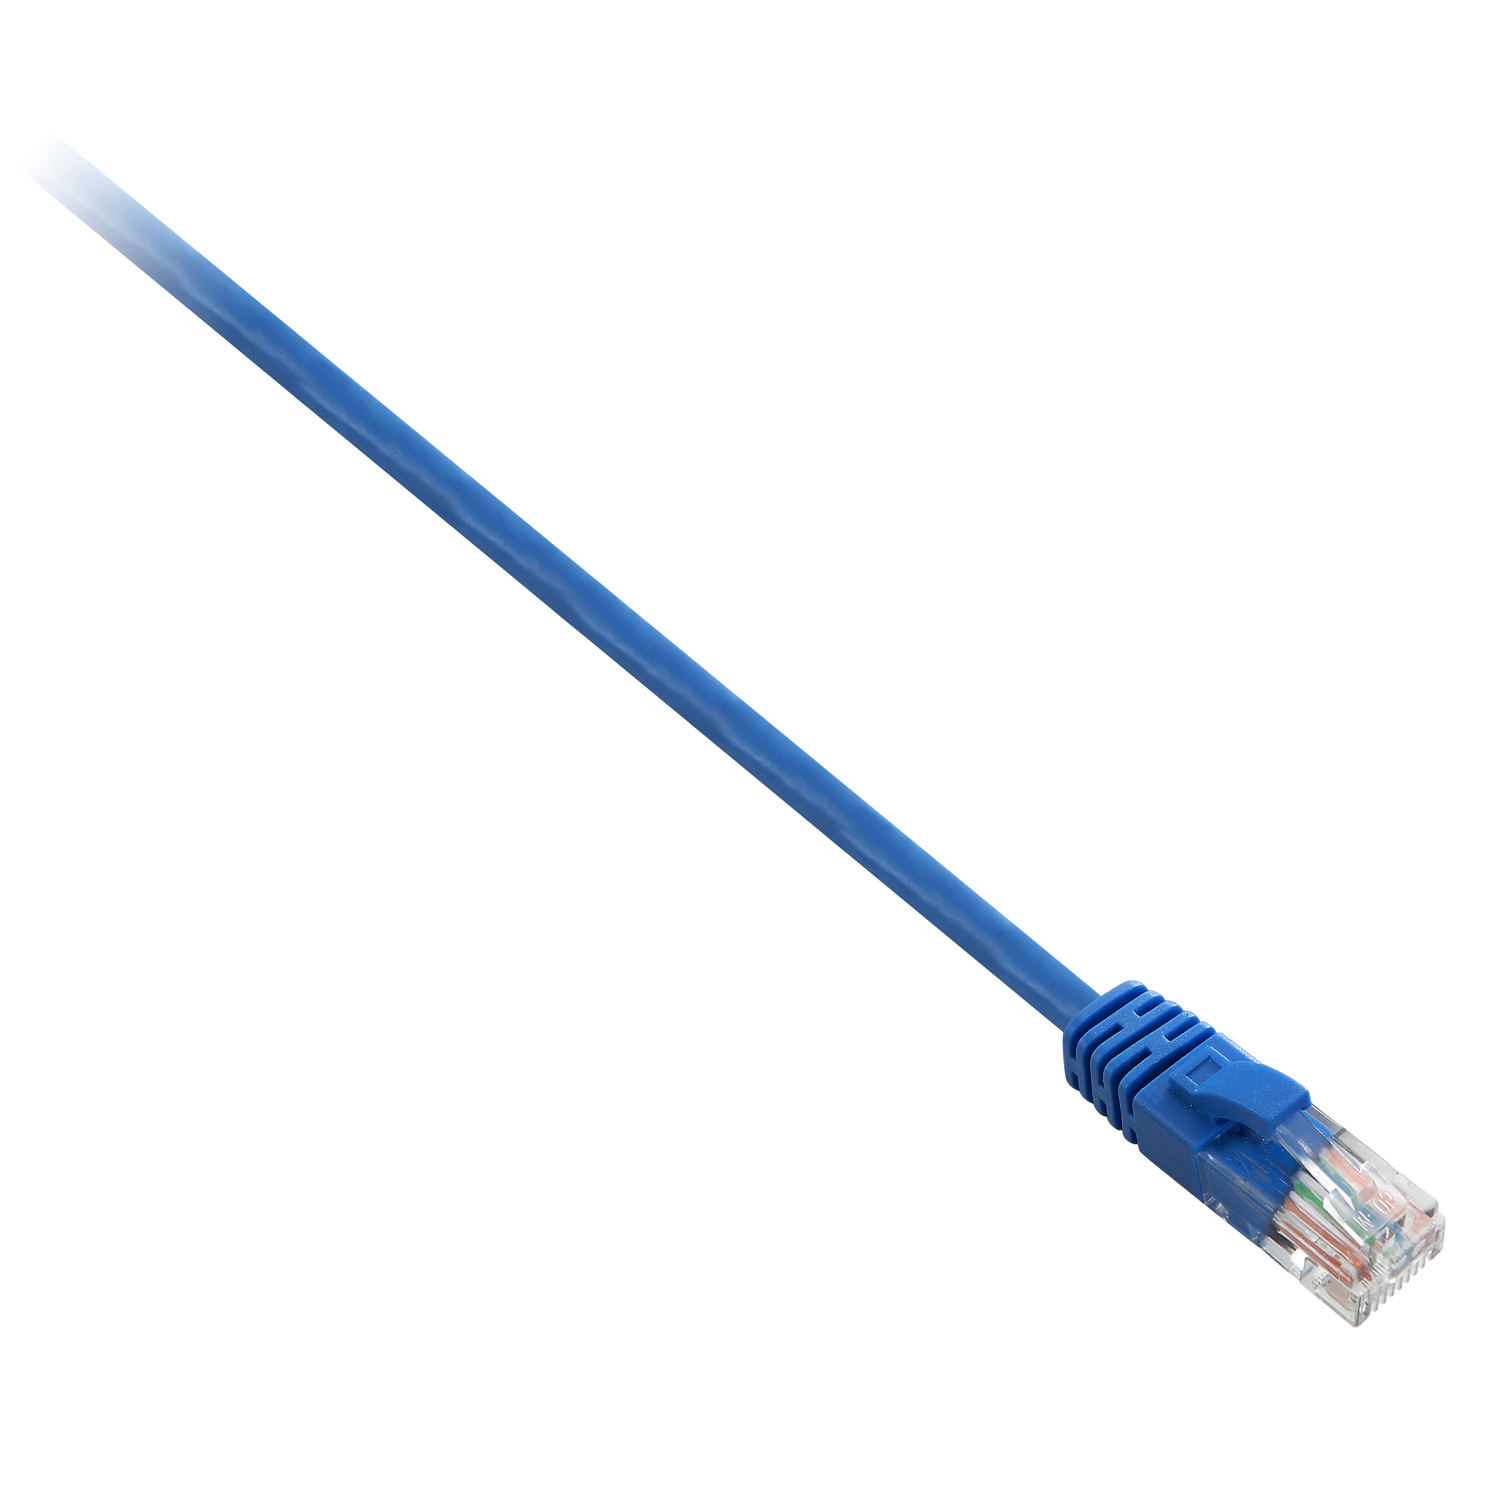 Cavo di Rete Cat5e Utp 3m Blu V7 Cables V7e3c5u 03m Bls 4038489019417